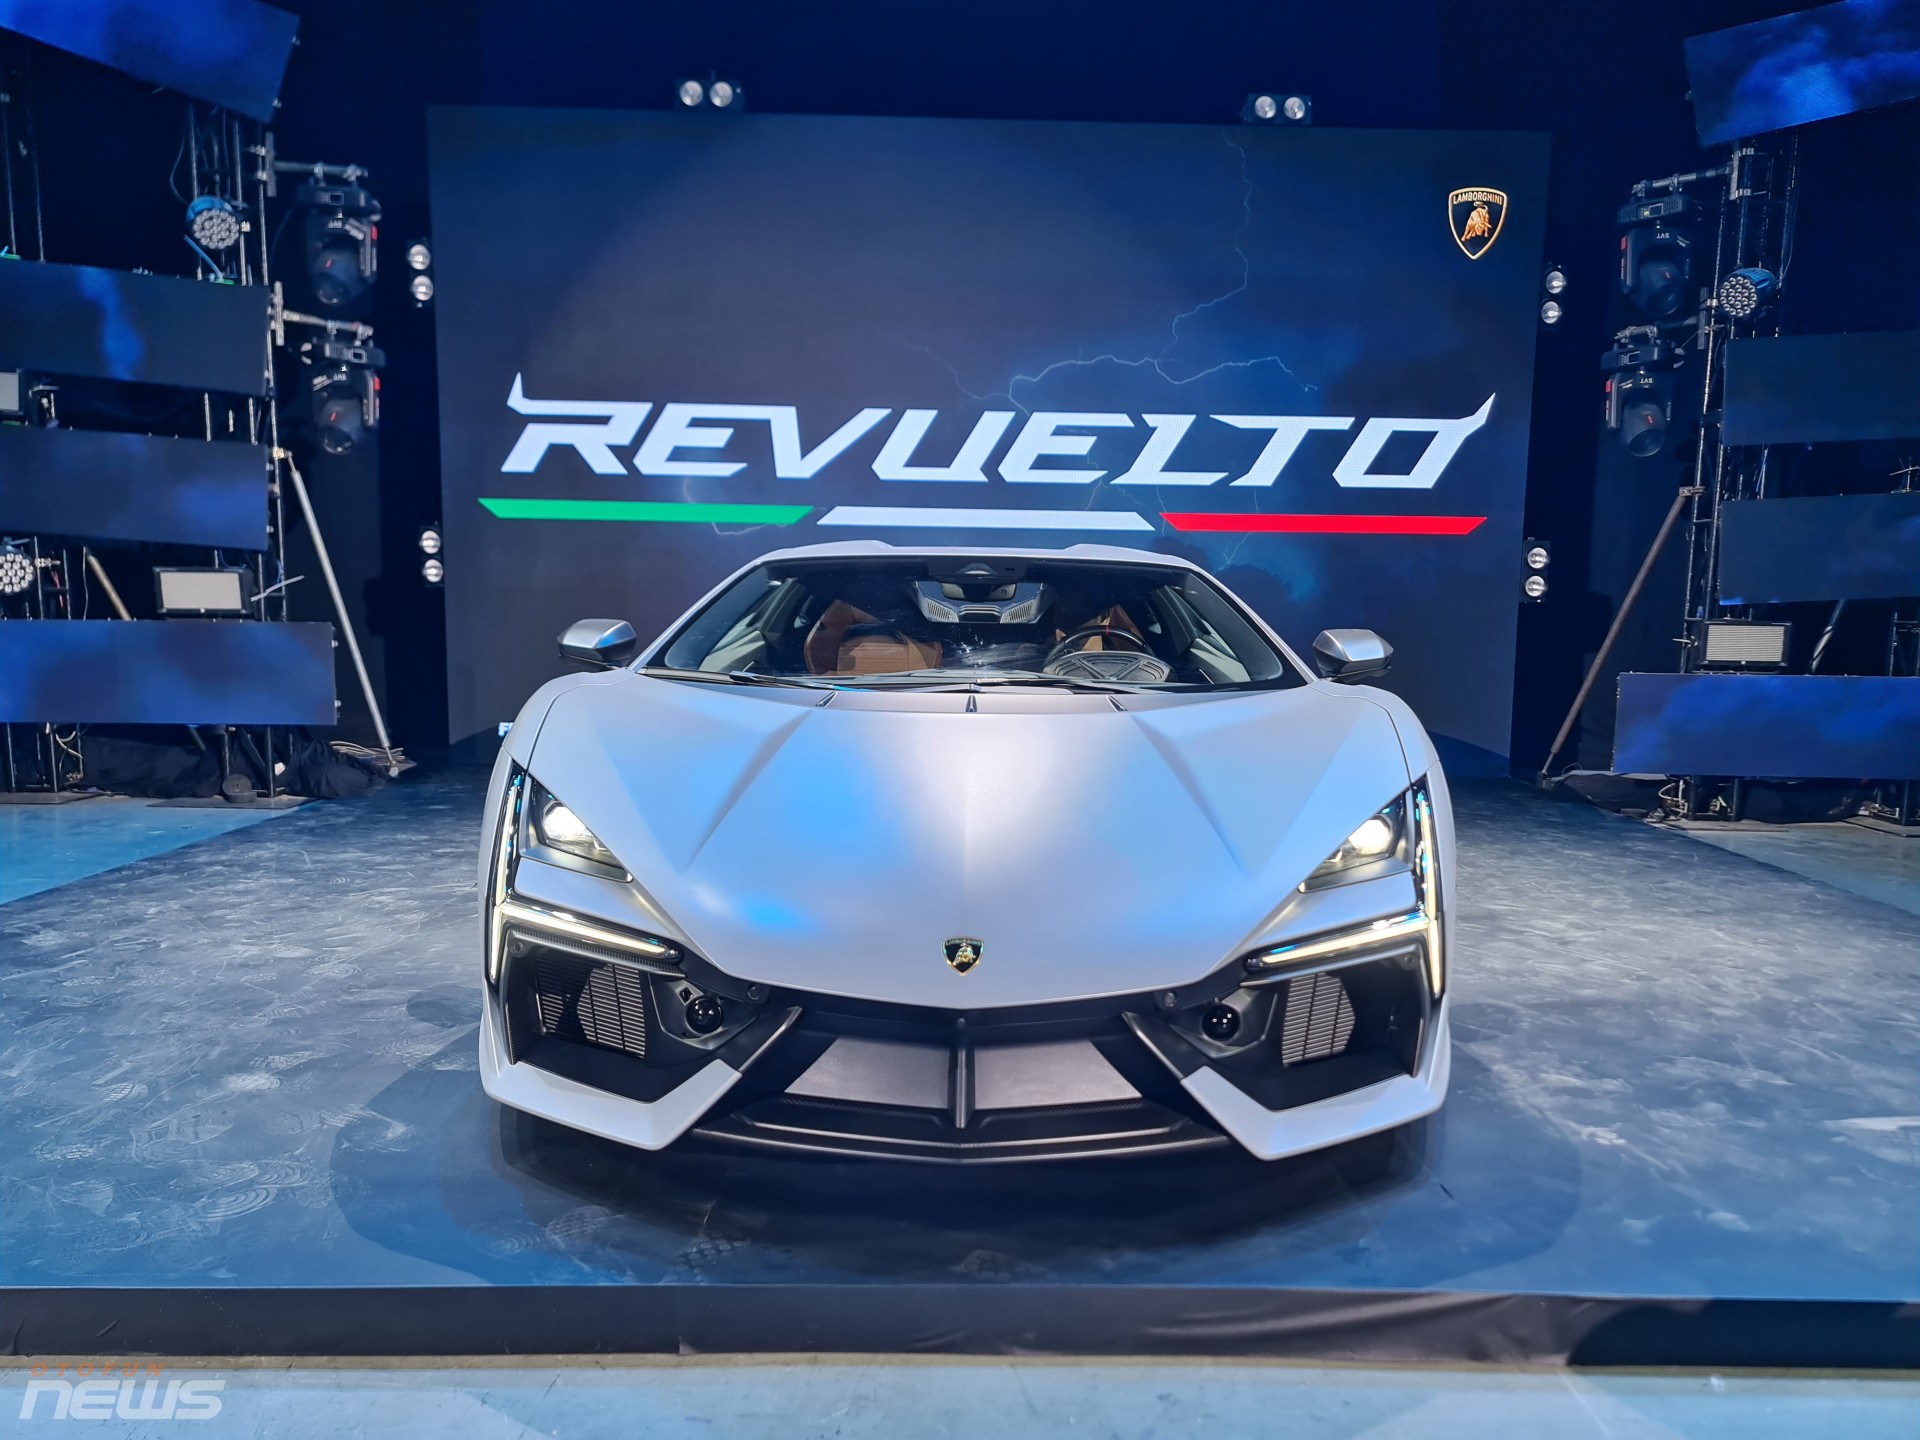 Siêu xe hybrid Lamborghini Revuelto động cơ V12 chào hàng khách Việt với giá 44 tỷ đồng